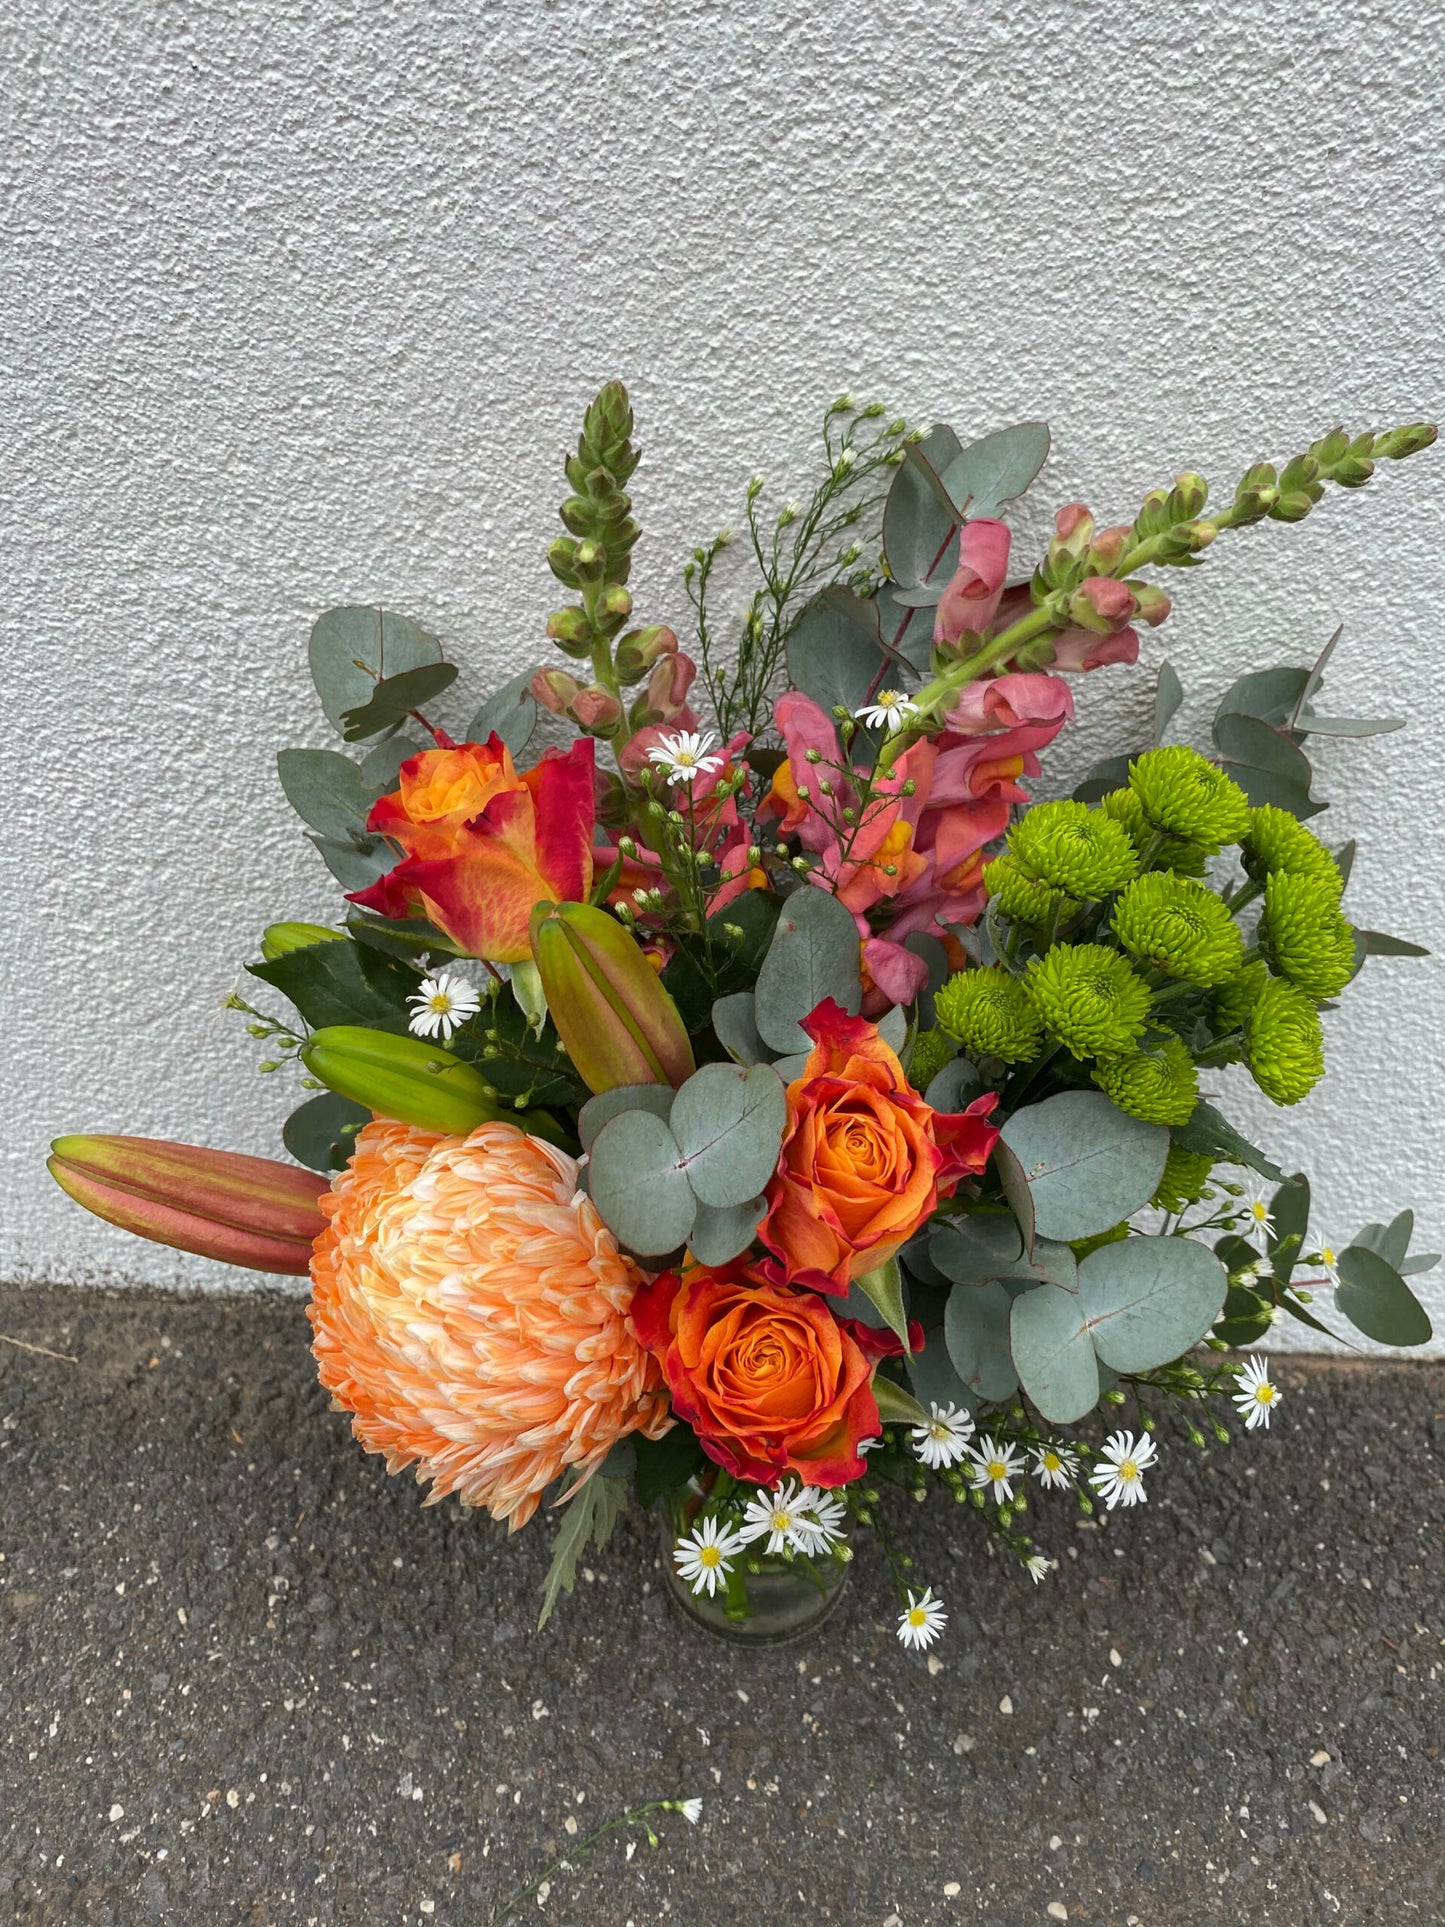 Florist Choice Flower Arrangement In A Jar (Autumn Colour Theme)